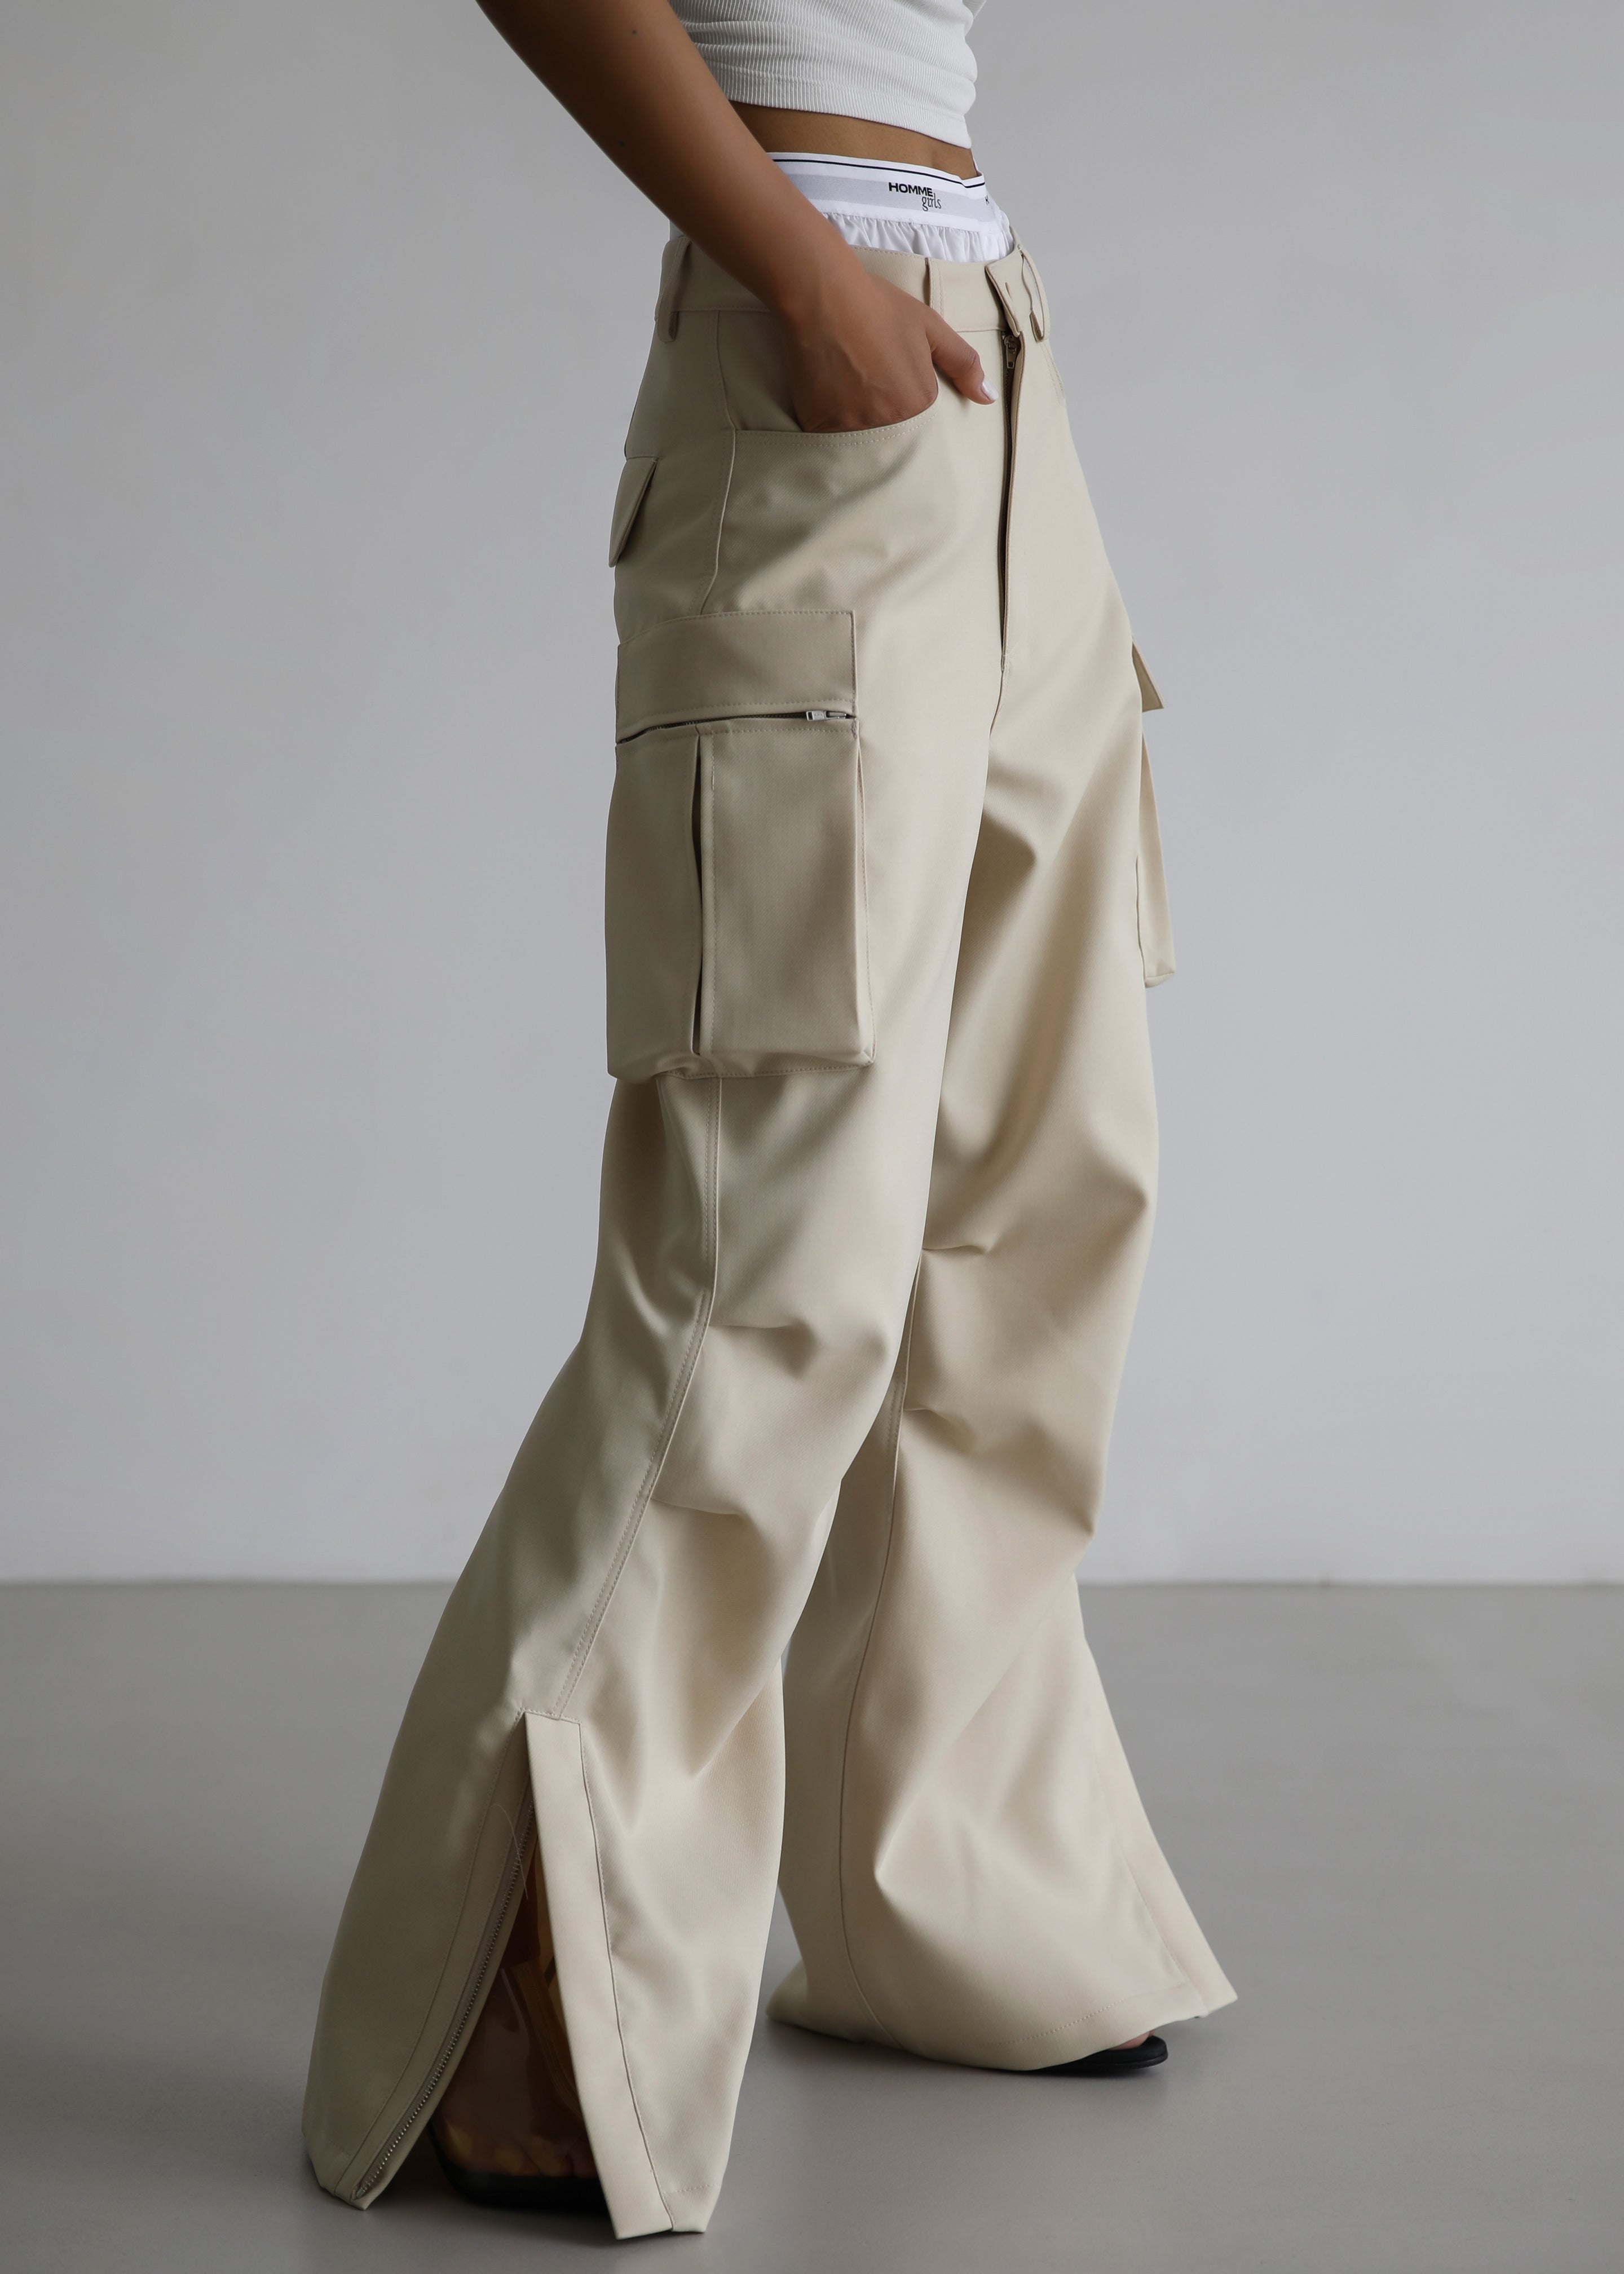 Cargo Pant for Women, Fall Outfit Ideas - Chiara | Cargo pants women  outfit, Cargo outfit, Cargo pants women